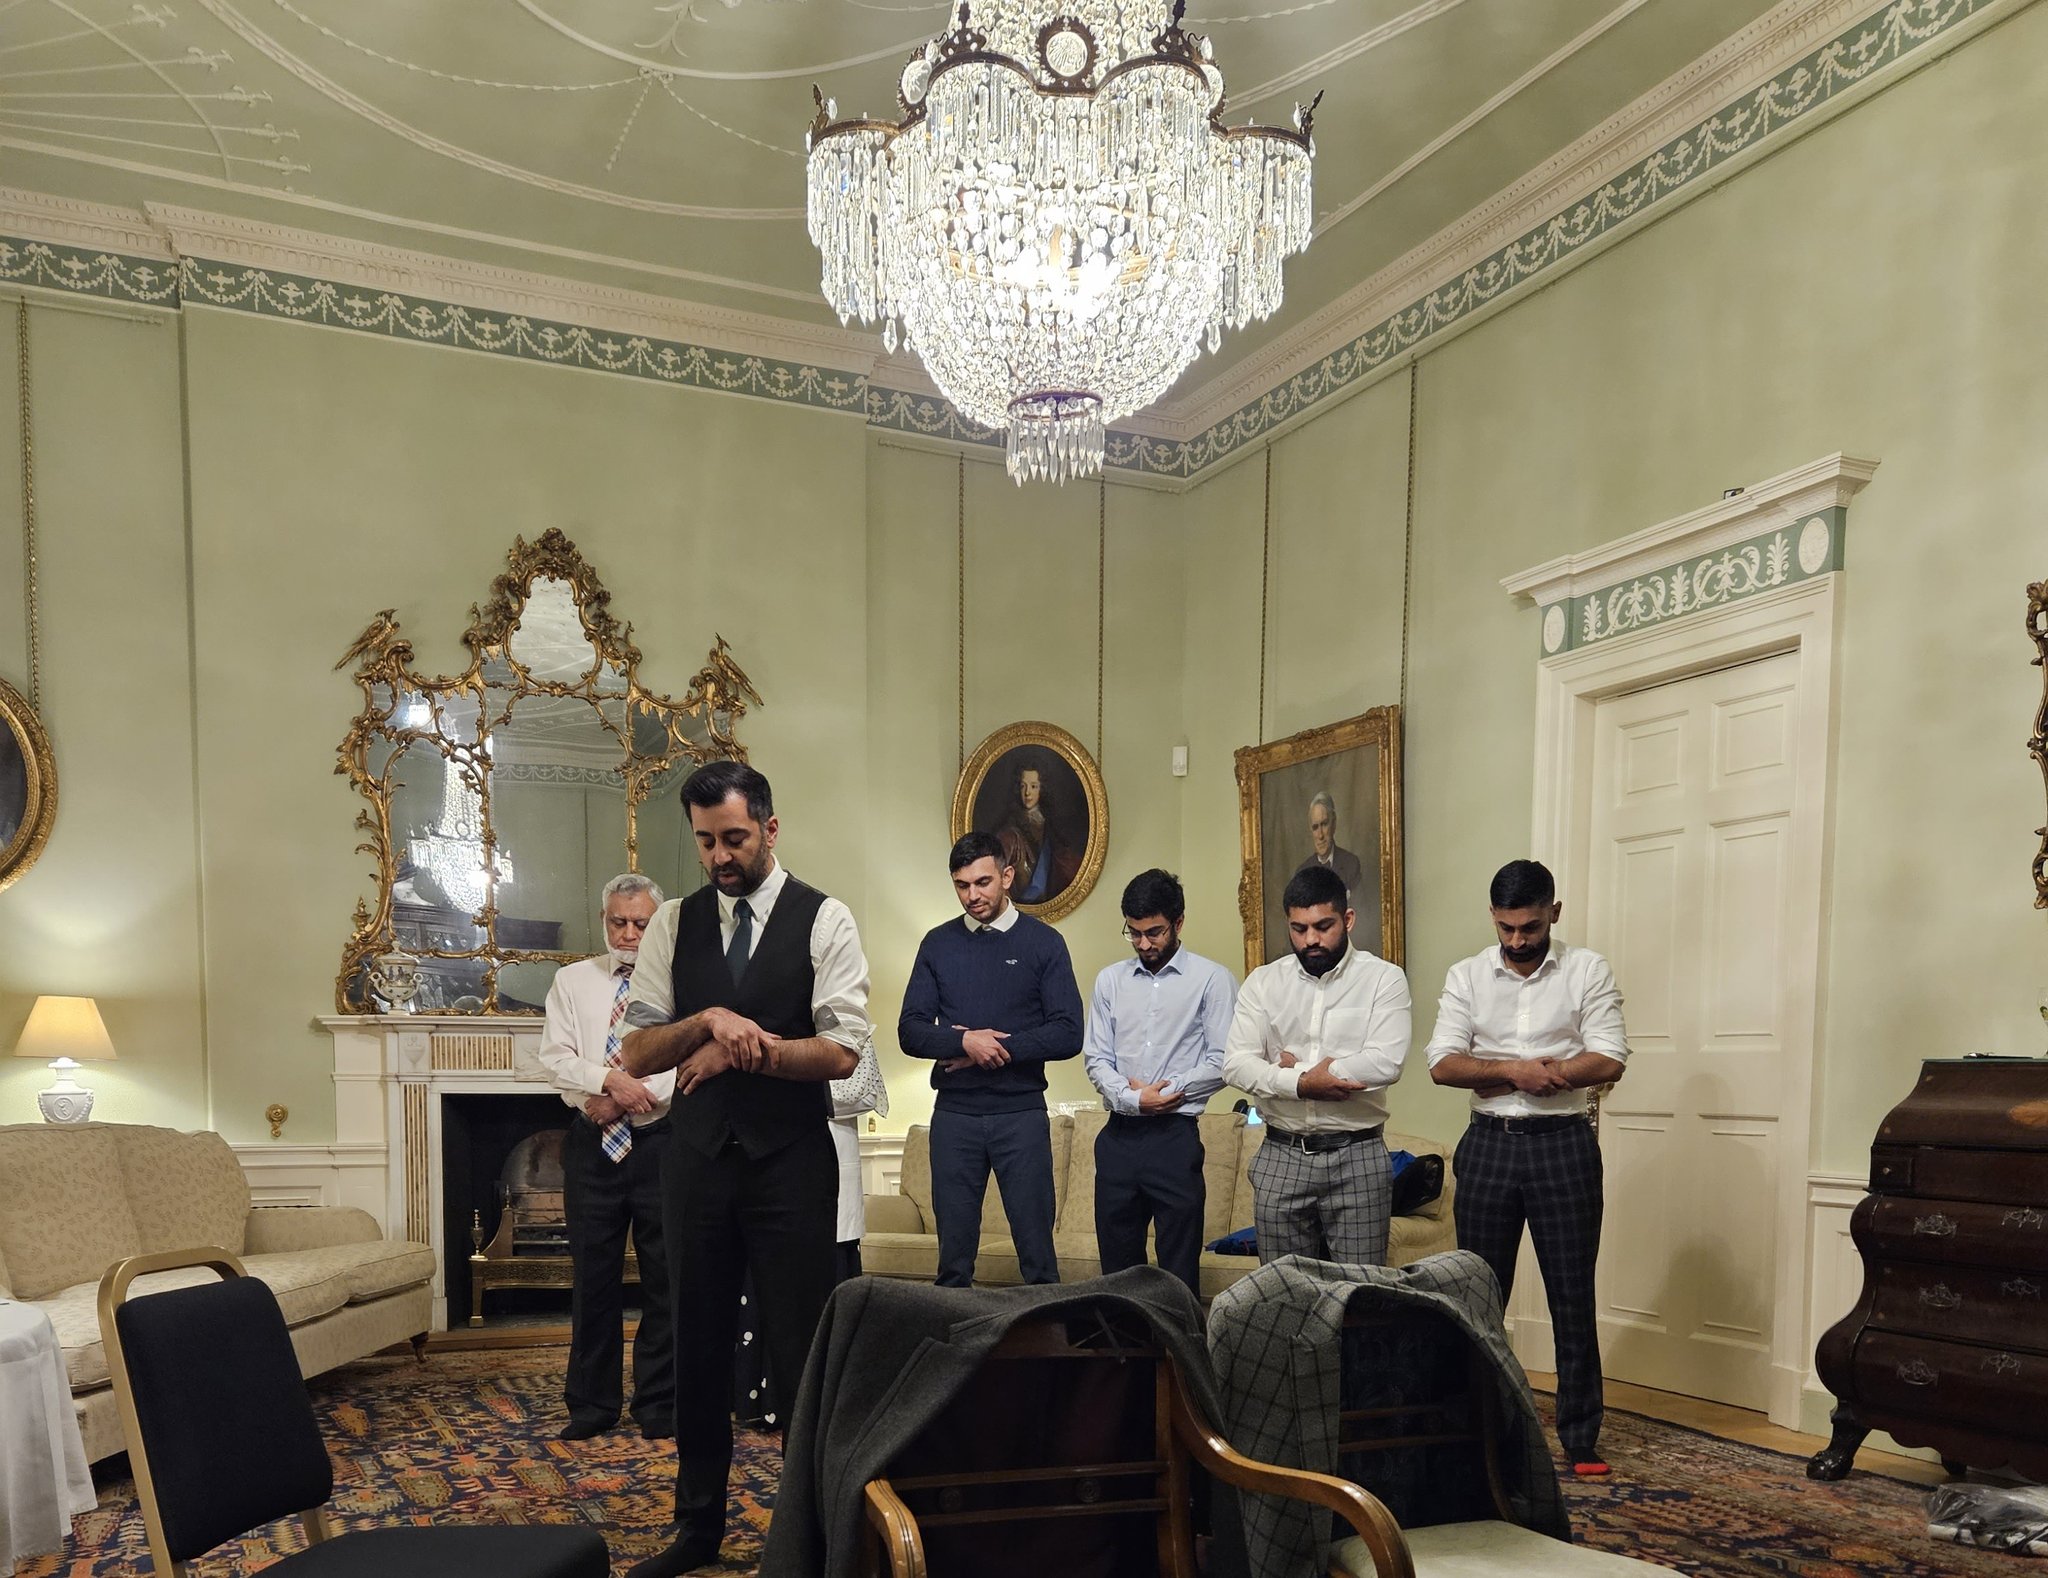 حمزة يوسف يصلي مع اسرته في مقر رئاسة وزراء اسكتلندا ( تواصل اجتماعي)